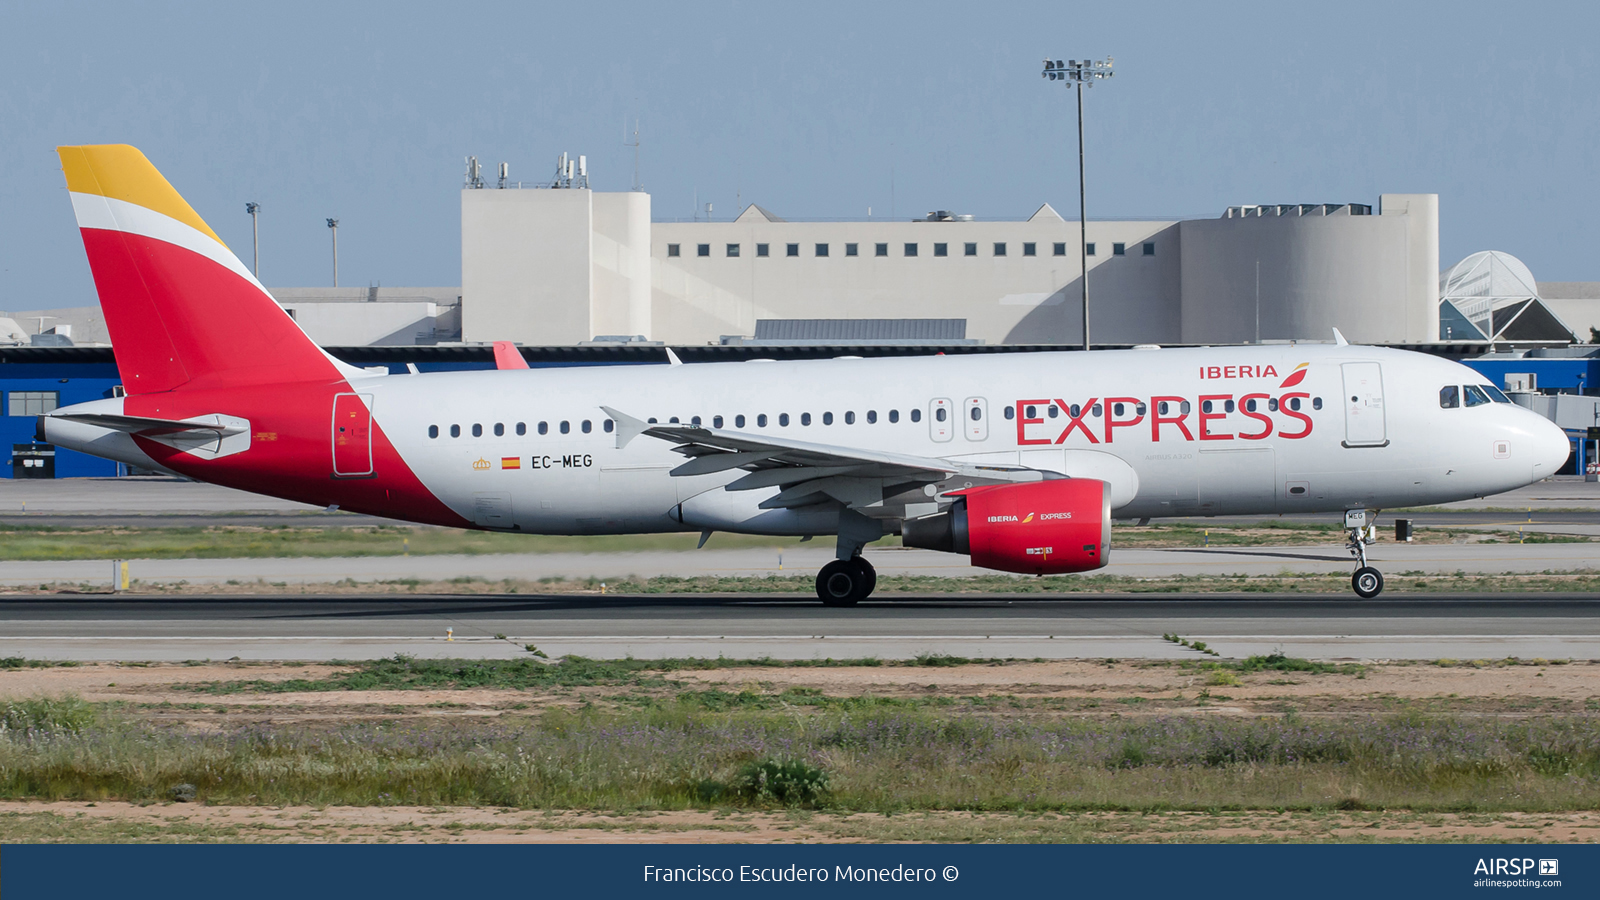 Iberia Express  Airbus A320  EC-MEG